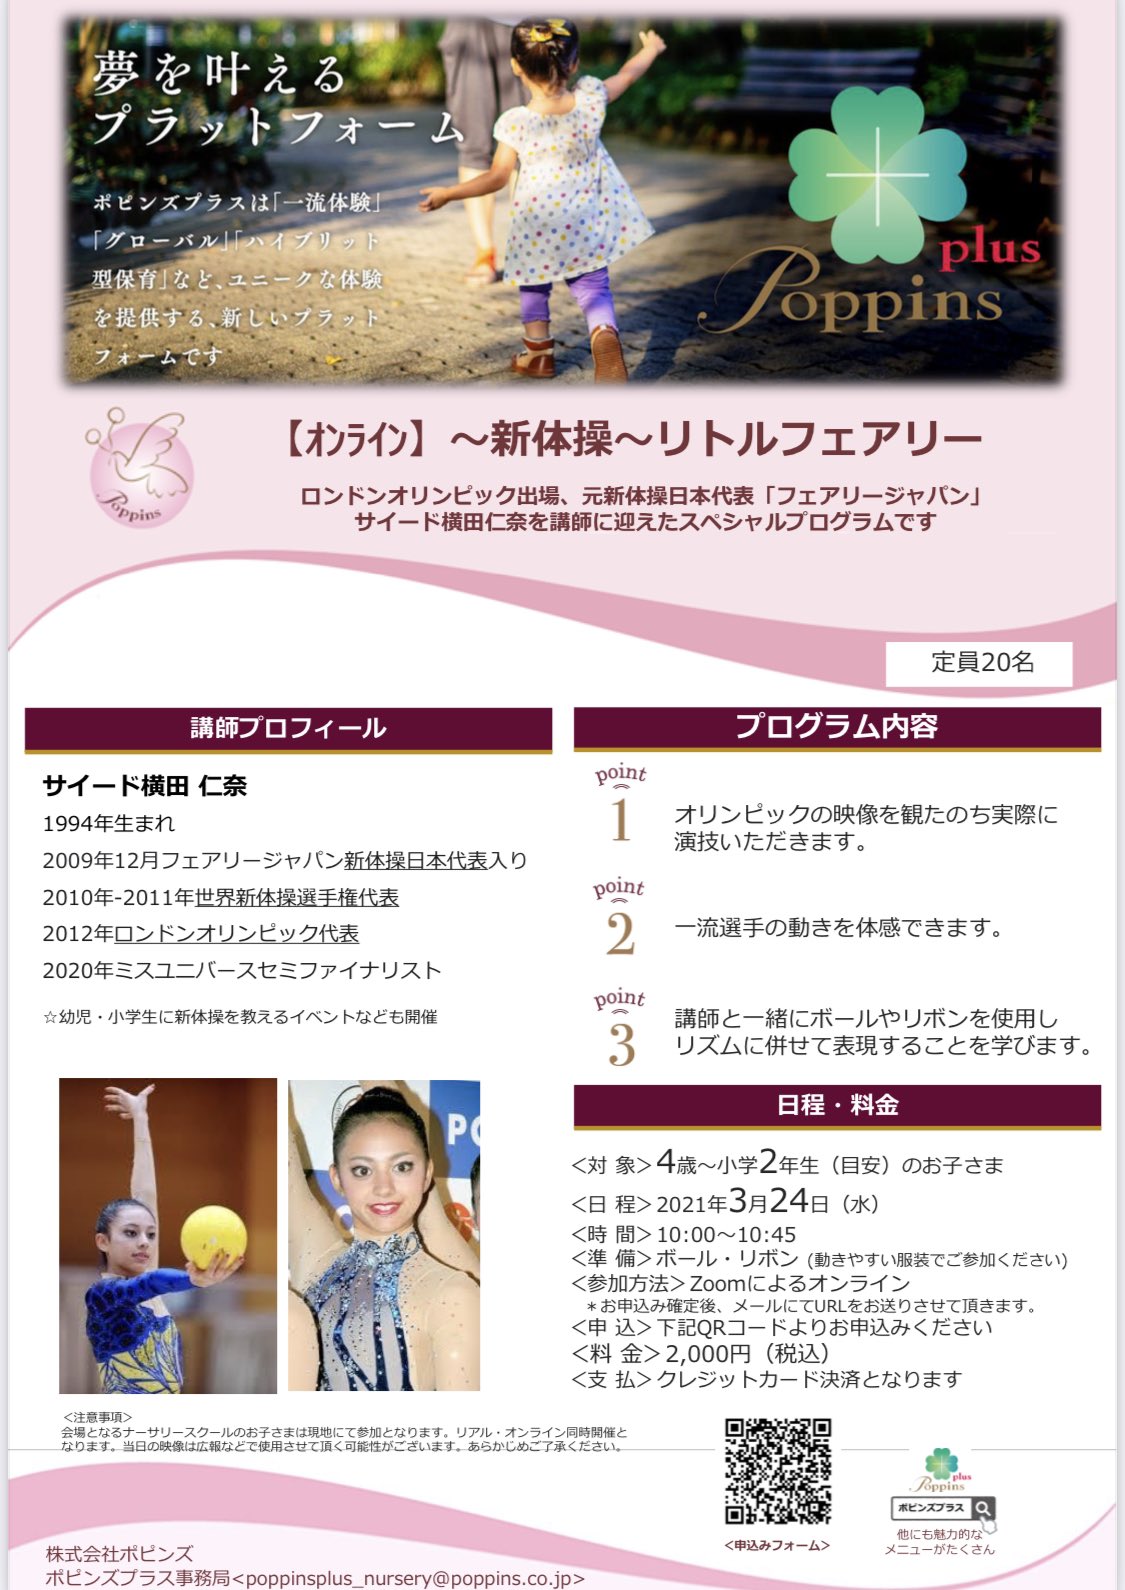 サイード横田 仁奈 𝗢𝗟𝗬 ポピンズプラスにて 新体操 リトルフェアリー スペシャルプログラムを開催します 春休み期間中 ぜひ一緒に身体動かしましょう Poppins 新体操 Zoomレッスン